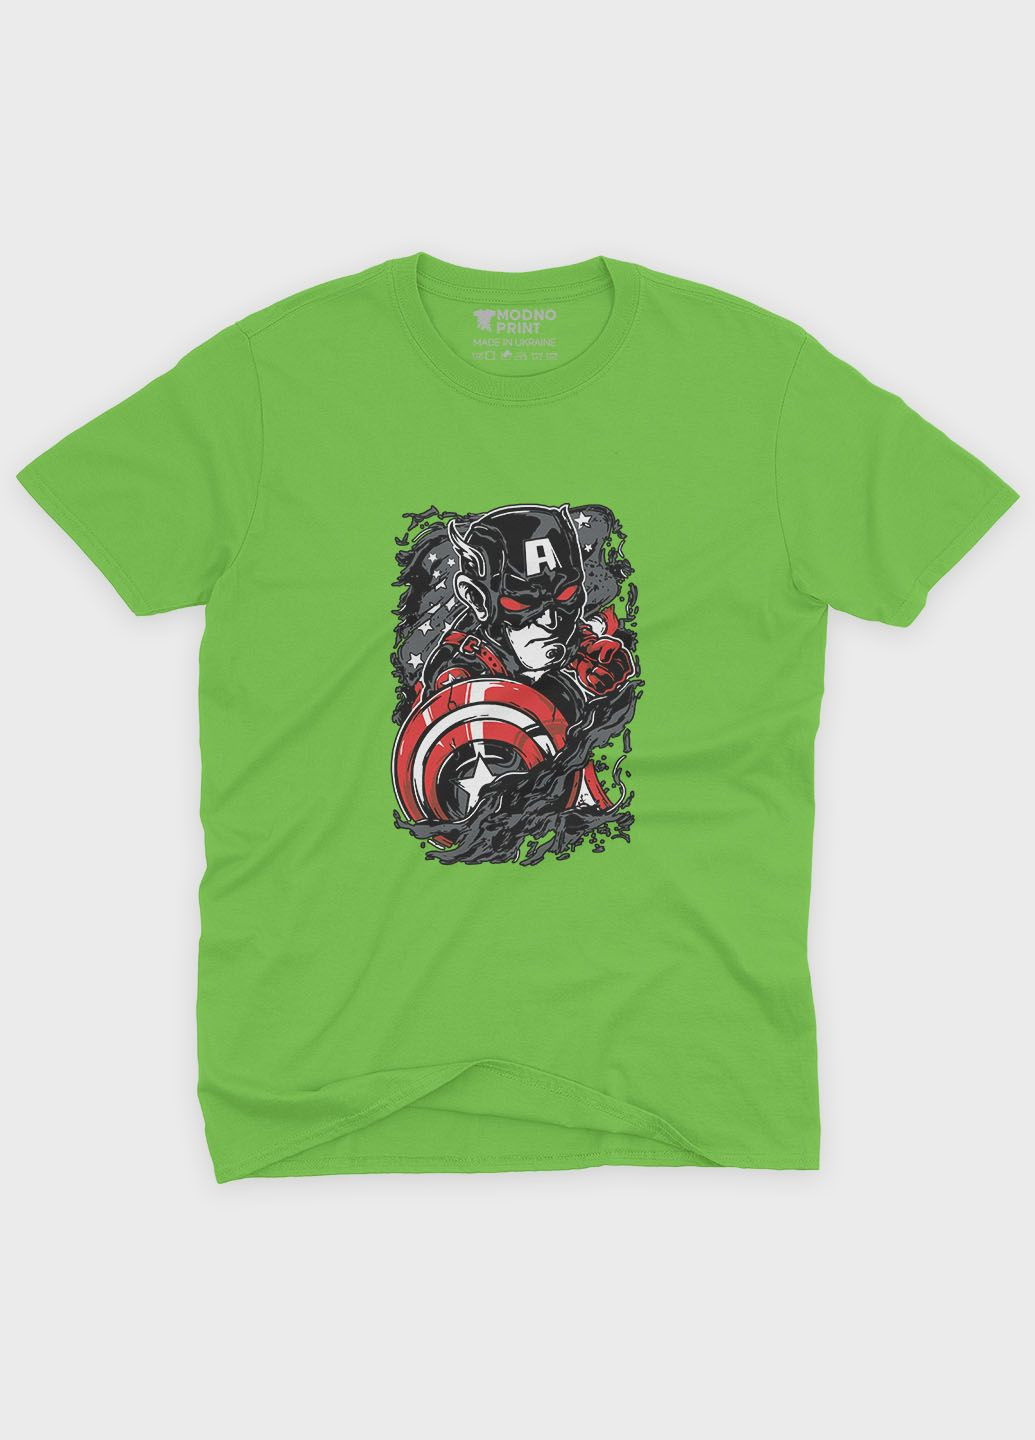 Салатовая демисезонная футболка для мальчика с принтом супергероя - капитан америка (ts001-1-kiw-006-022-013-b) Modno